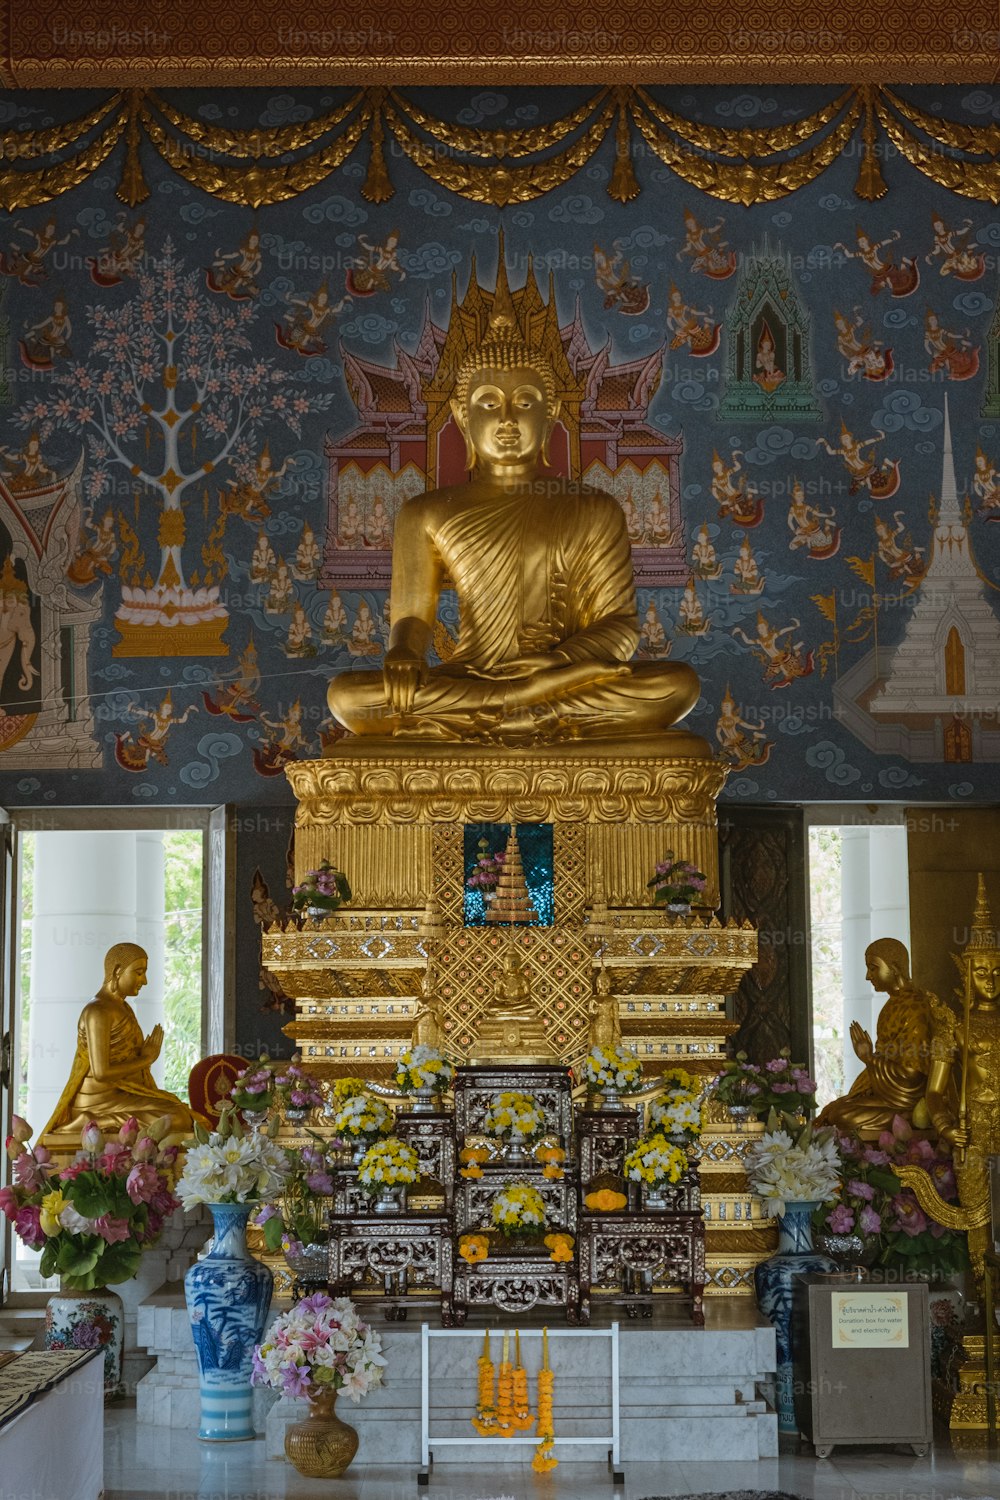 Eine große goldene Buddha-Statue sitzt in einem Raum